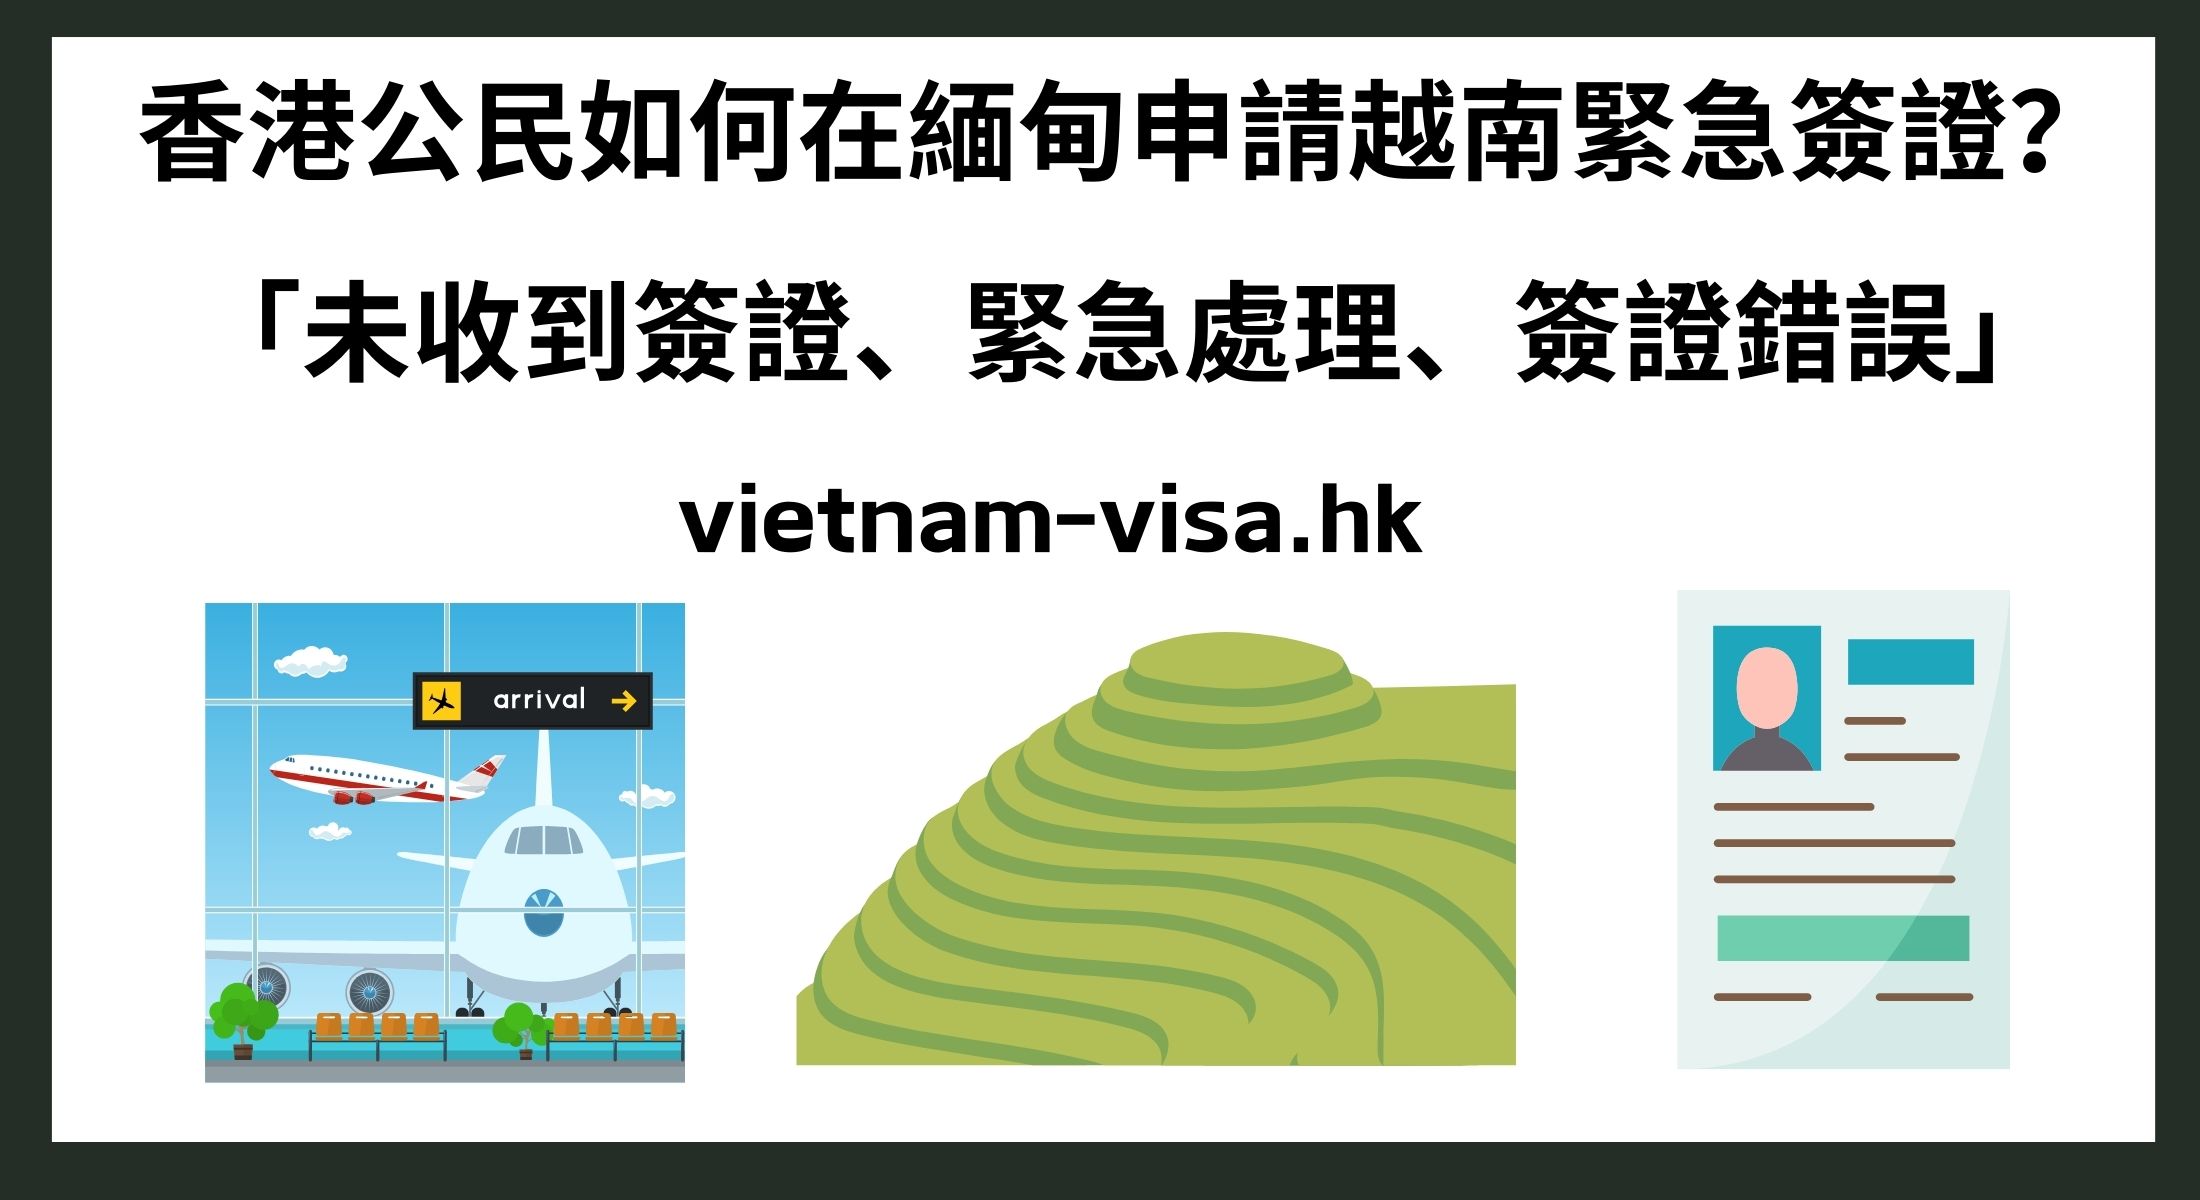 香港公民如何在緬甸申請越南緊急簽證？ 「未收到簽證、緊急處理、簽證錯誤」